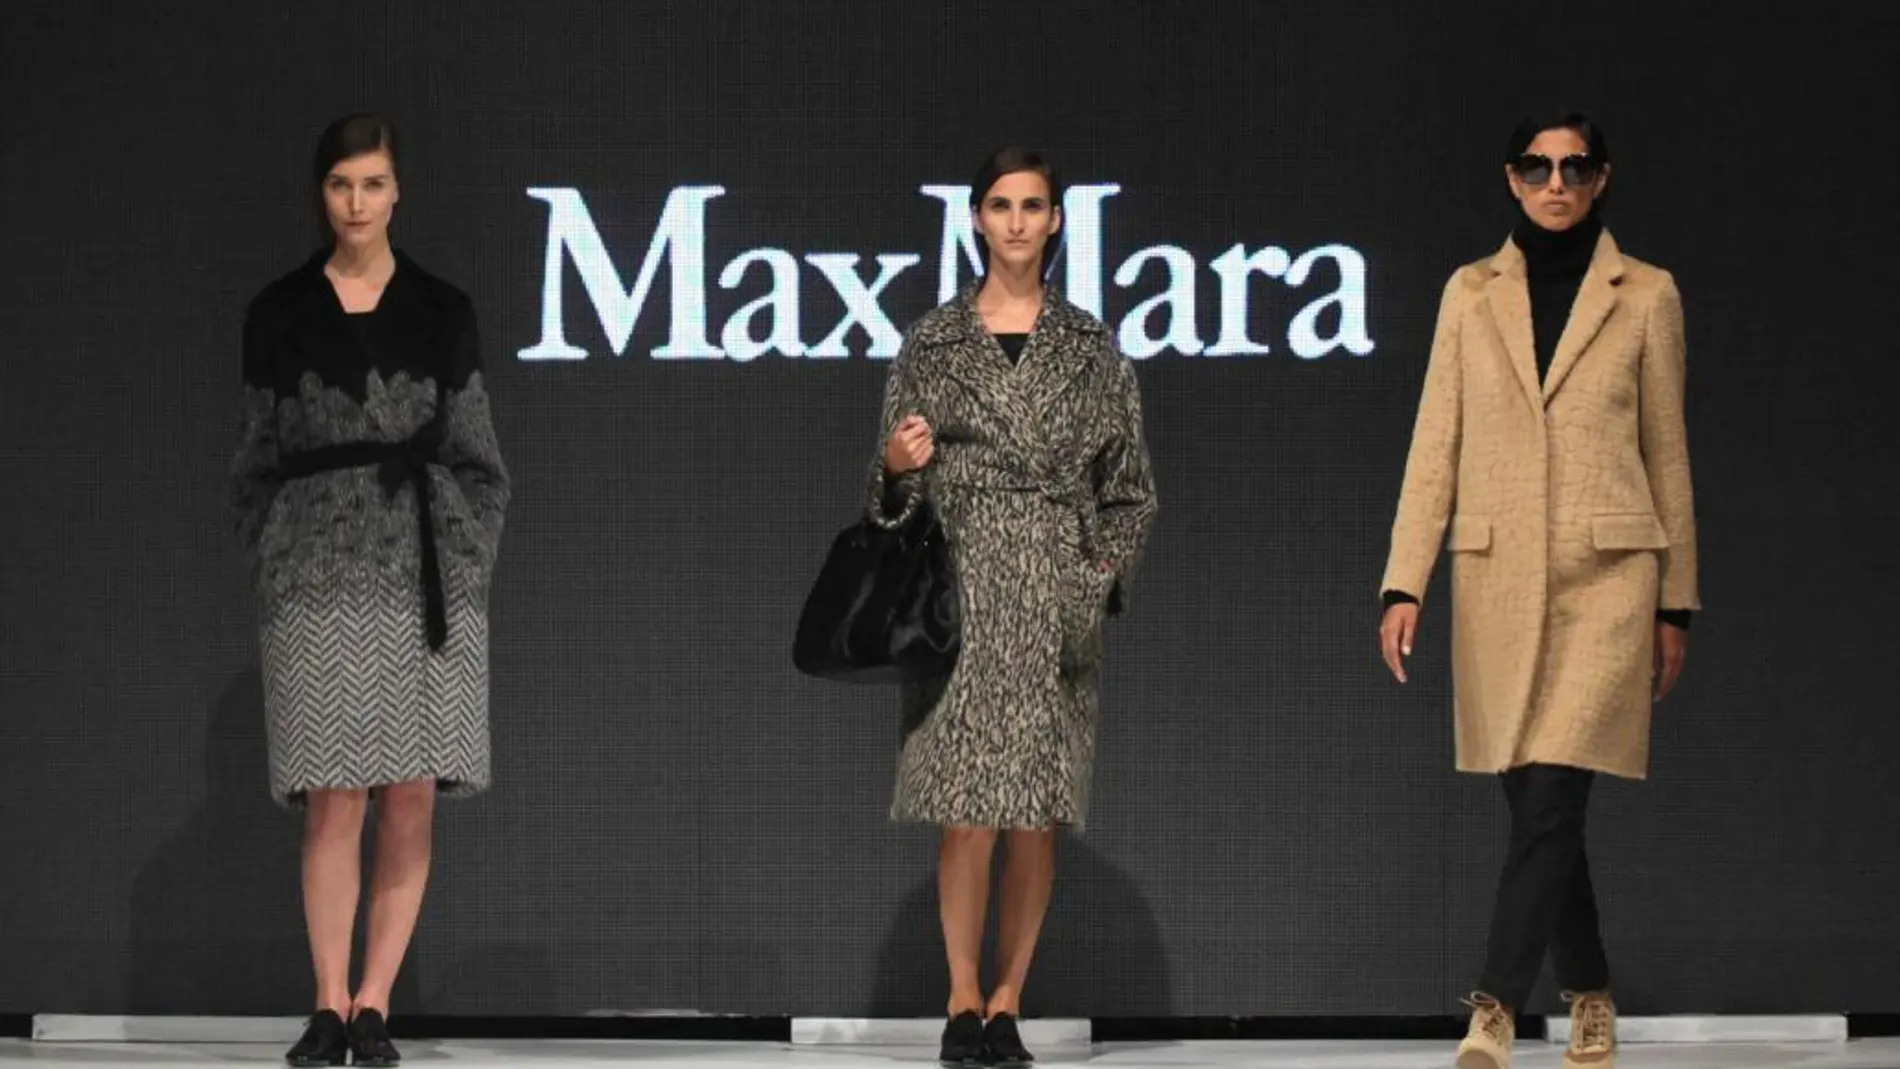 Modelos lucen en pasarela creaciones de la firma italiana Max Mara, que presenta una muestra de sus diseños elaborados en fibra de alpaca.